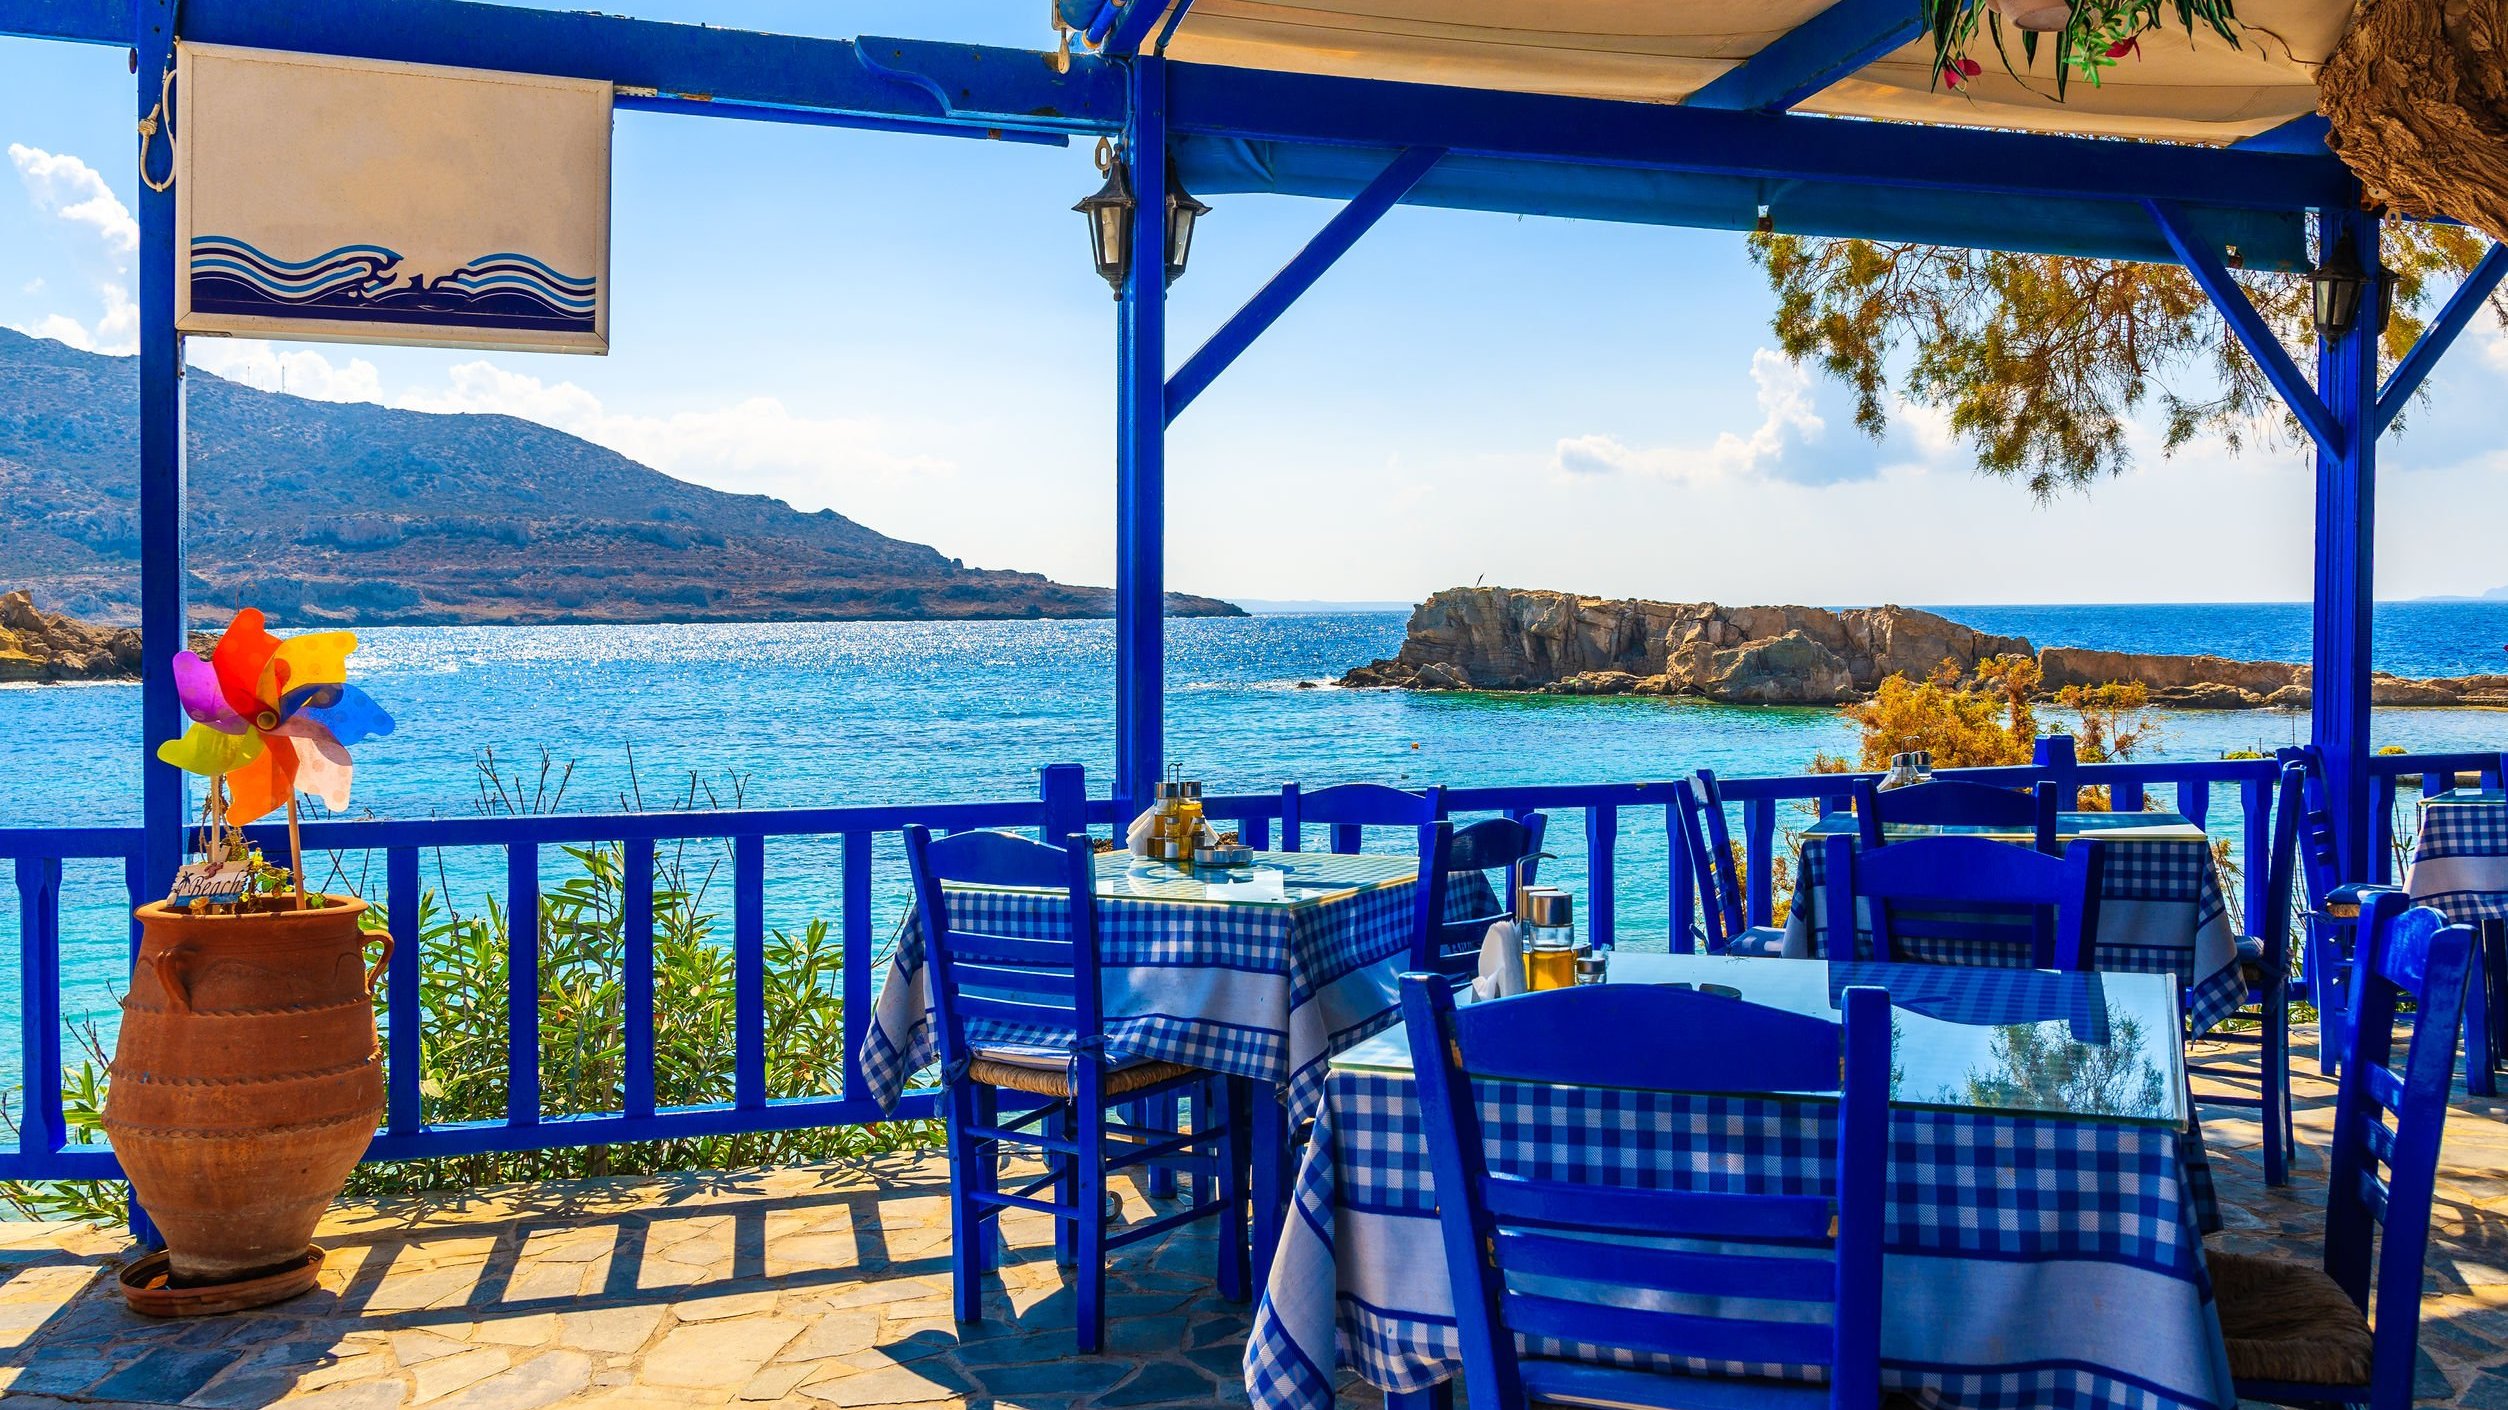 Vista panorâmica de restaurante de pousada em frente ao mar.